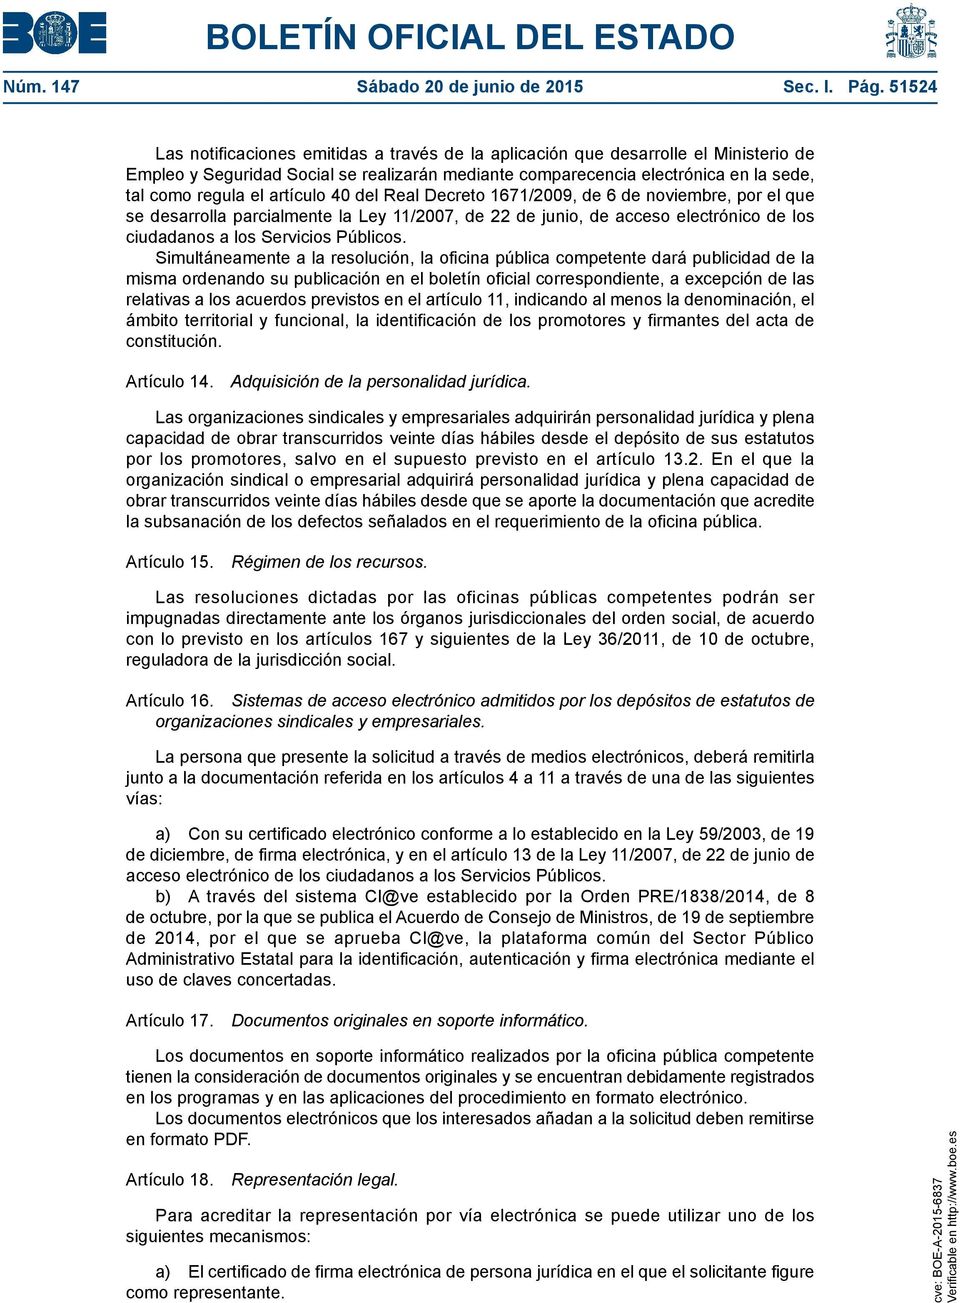 artículo 40 del Real Decreto 1671/2009, de 6 de noviembre, por el que se desarrolla parcialmente la Ley 11/2007, de 22 de junio, de acceso electrónico de los ciudadanos a los Servicios Públicos.